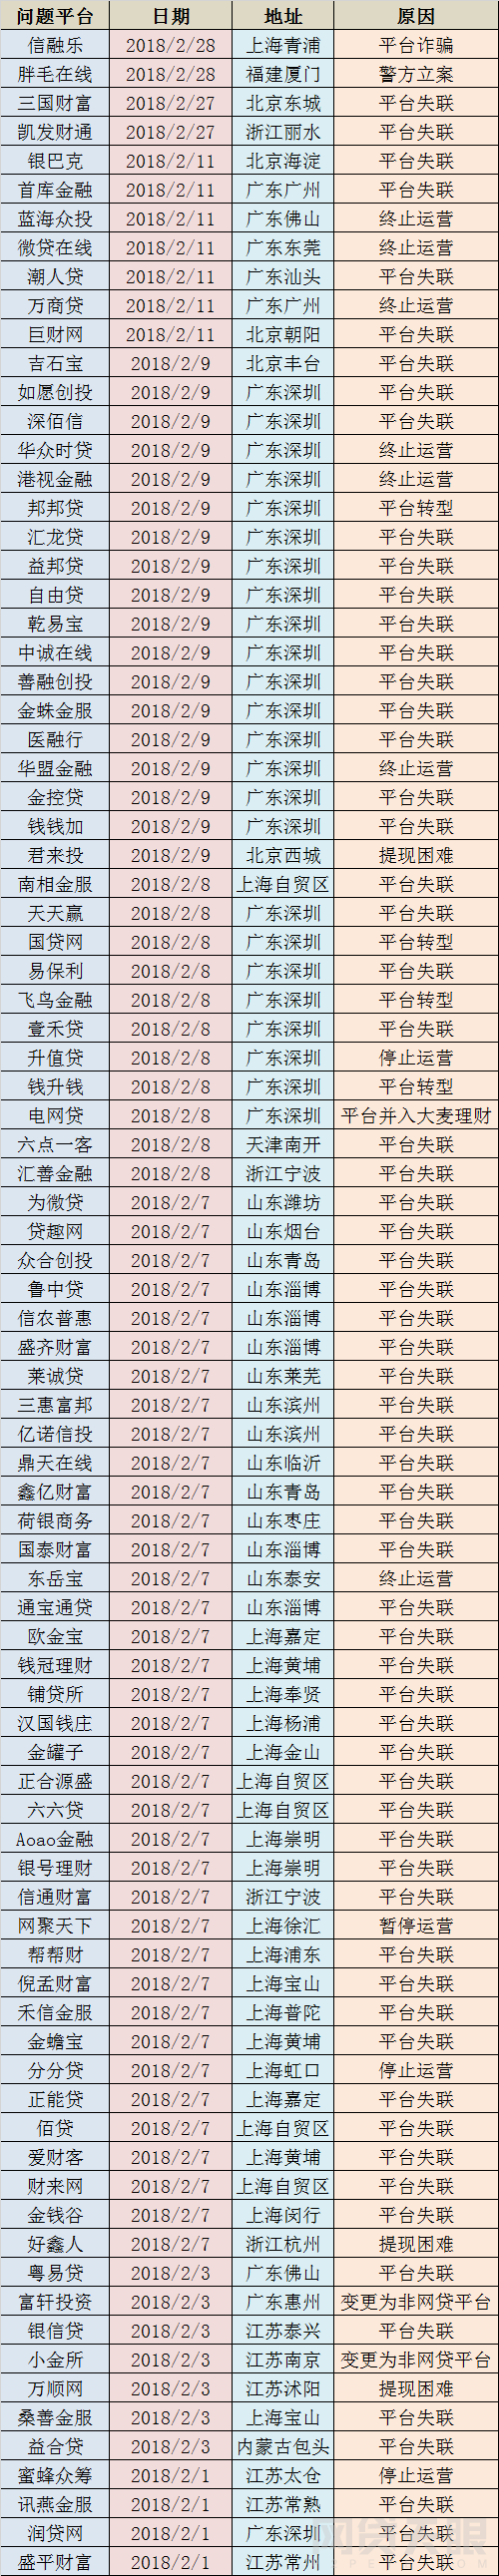 2月全国网贷问题平台逾80家 深圳有24家占比三成2